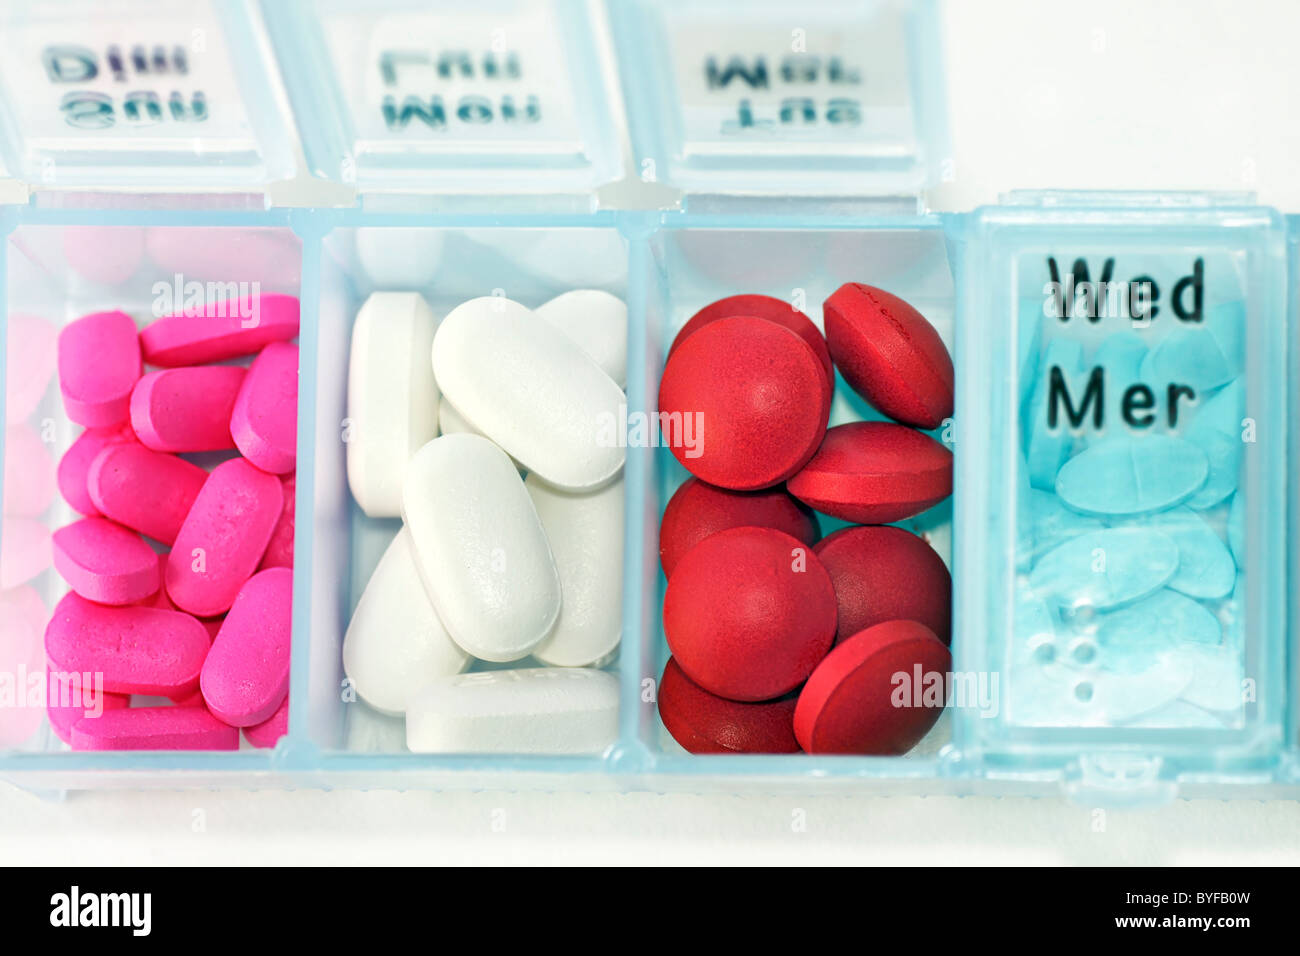 Französisch, Englisch und Braille Feld Veranstalter Tabletteneinteiler mit  bunten Drogen Stockfotografie - Alamy